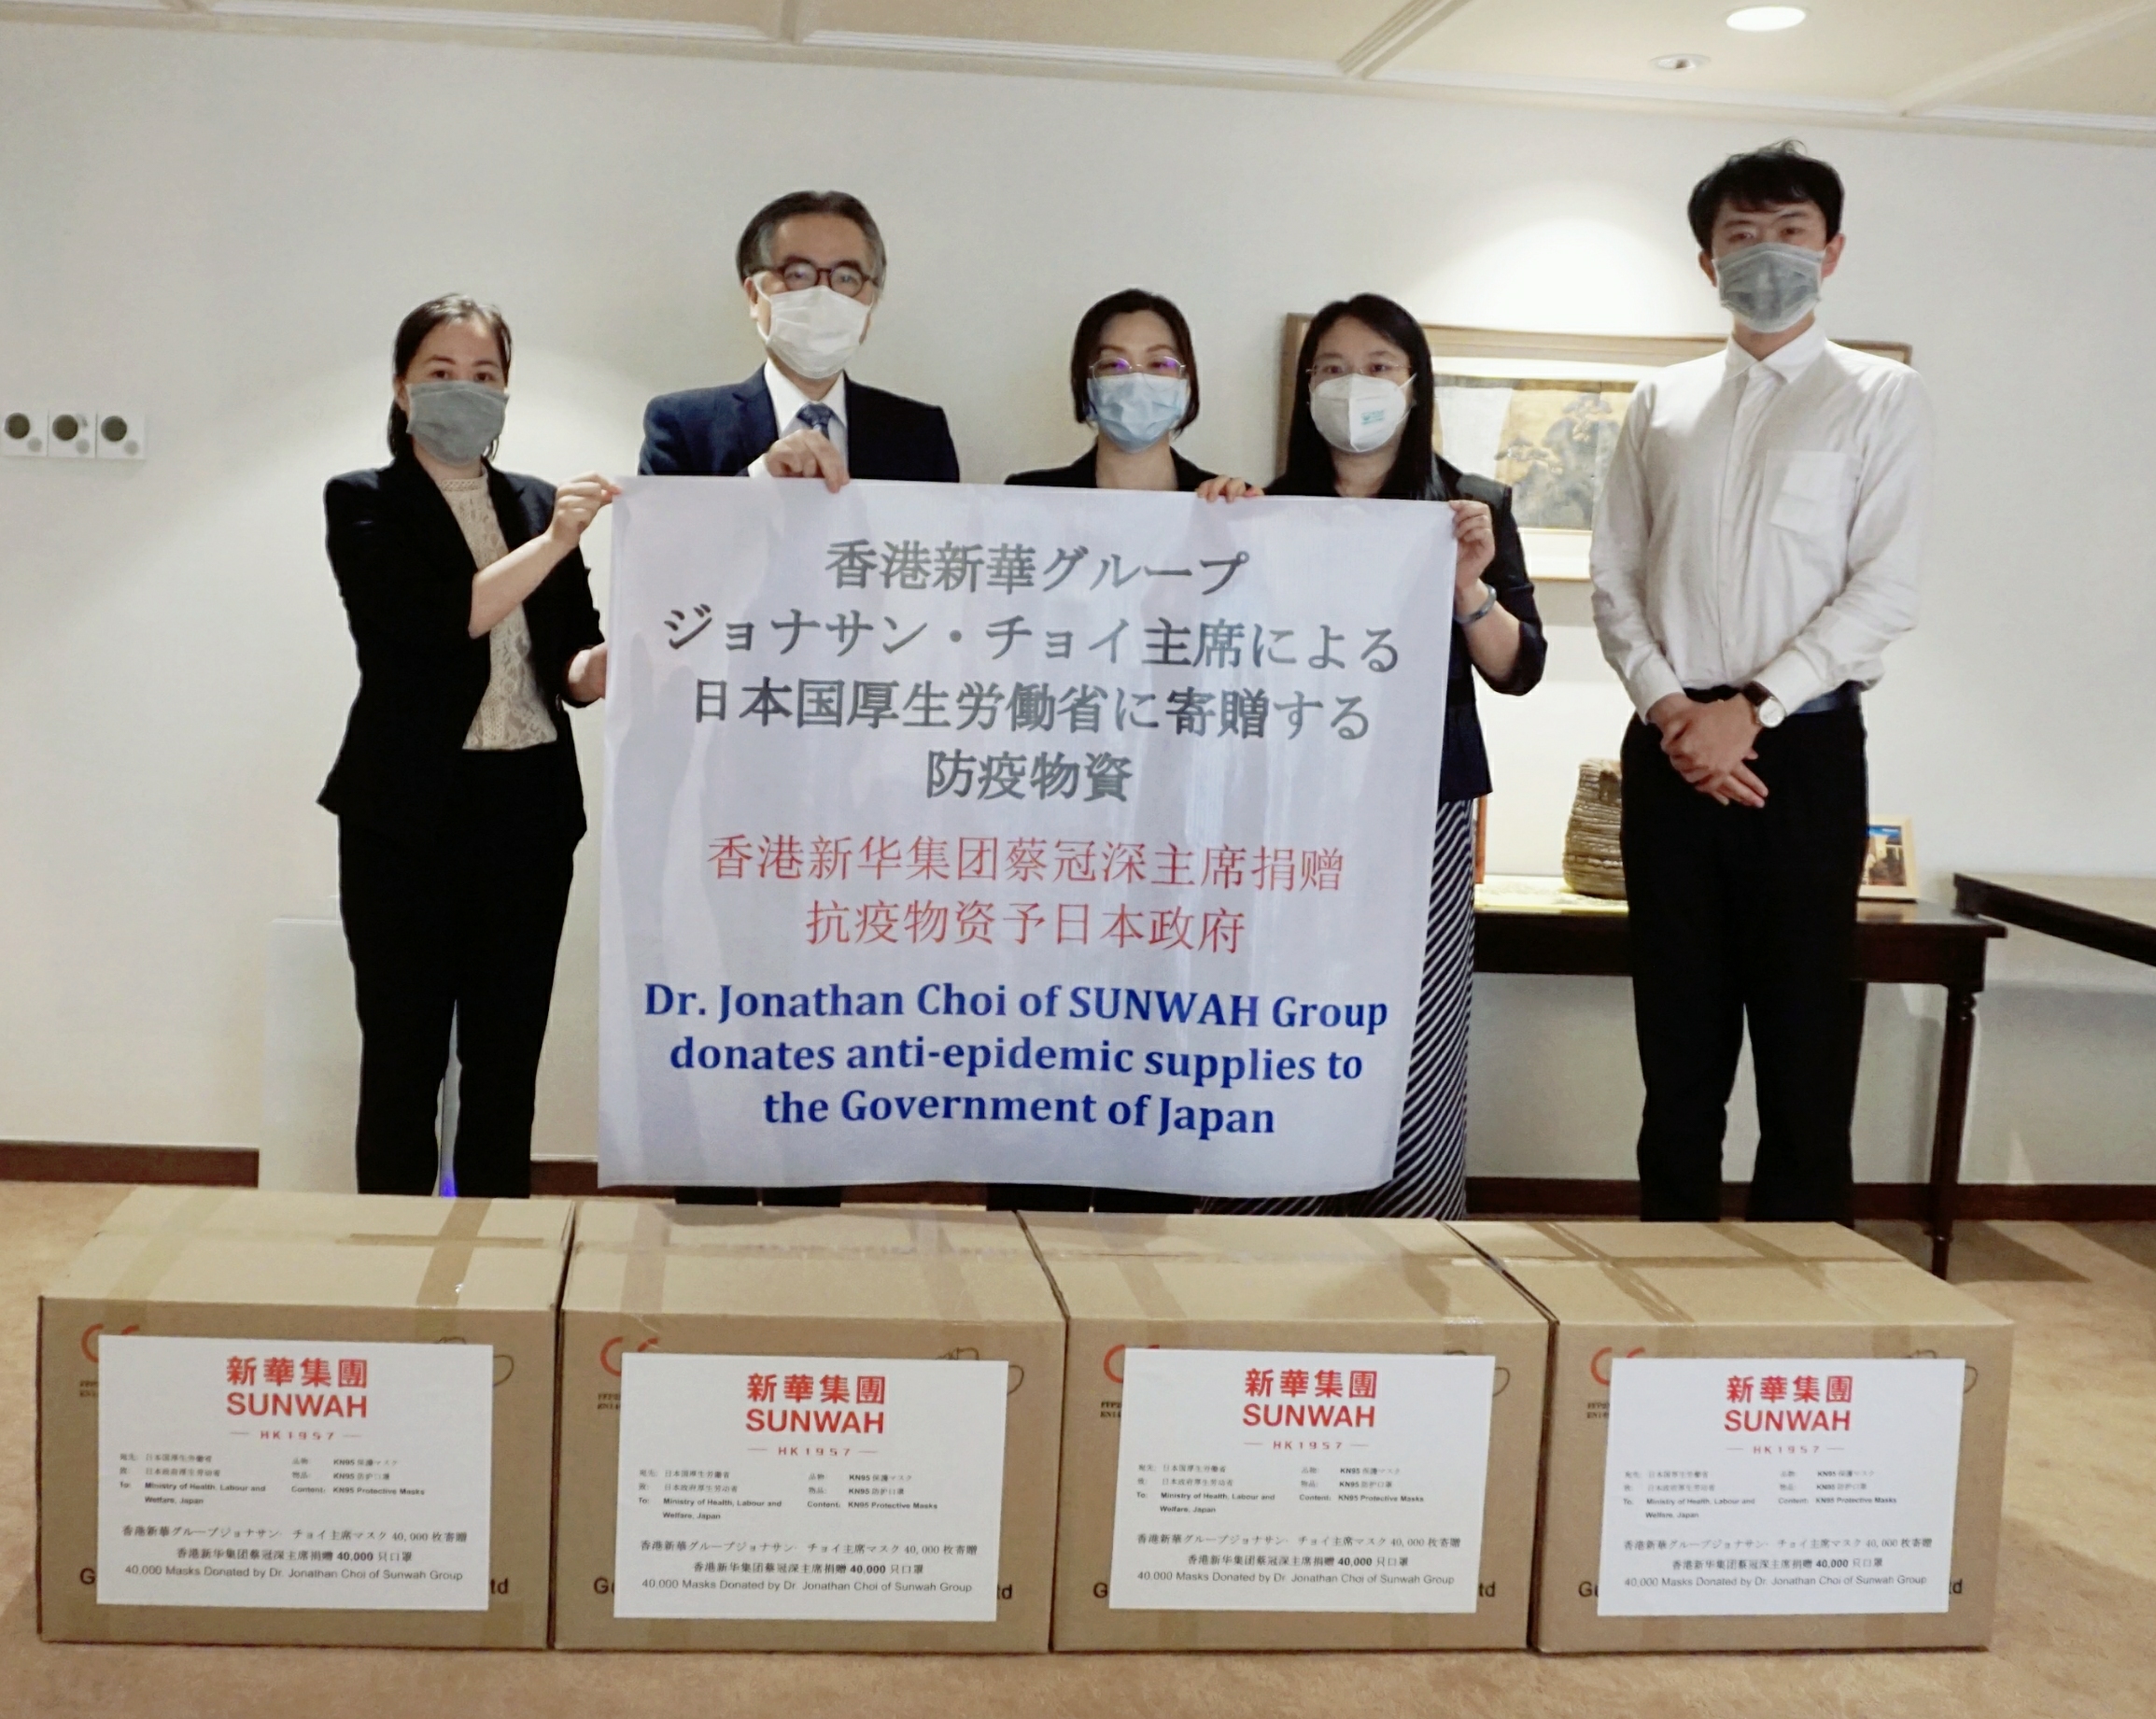 香港新華集團國際事務部副總監張璇代表蔡冠深捐贈4萬個KN95防護口罩（受訪人供圖）